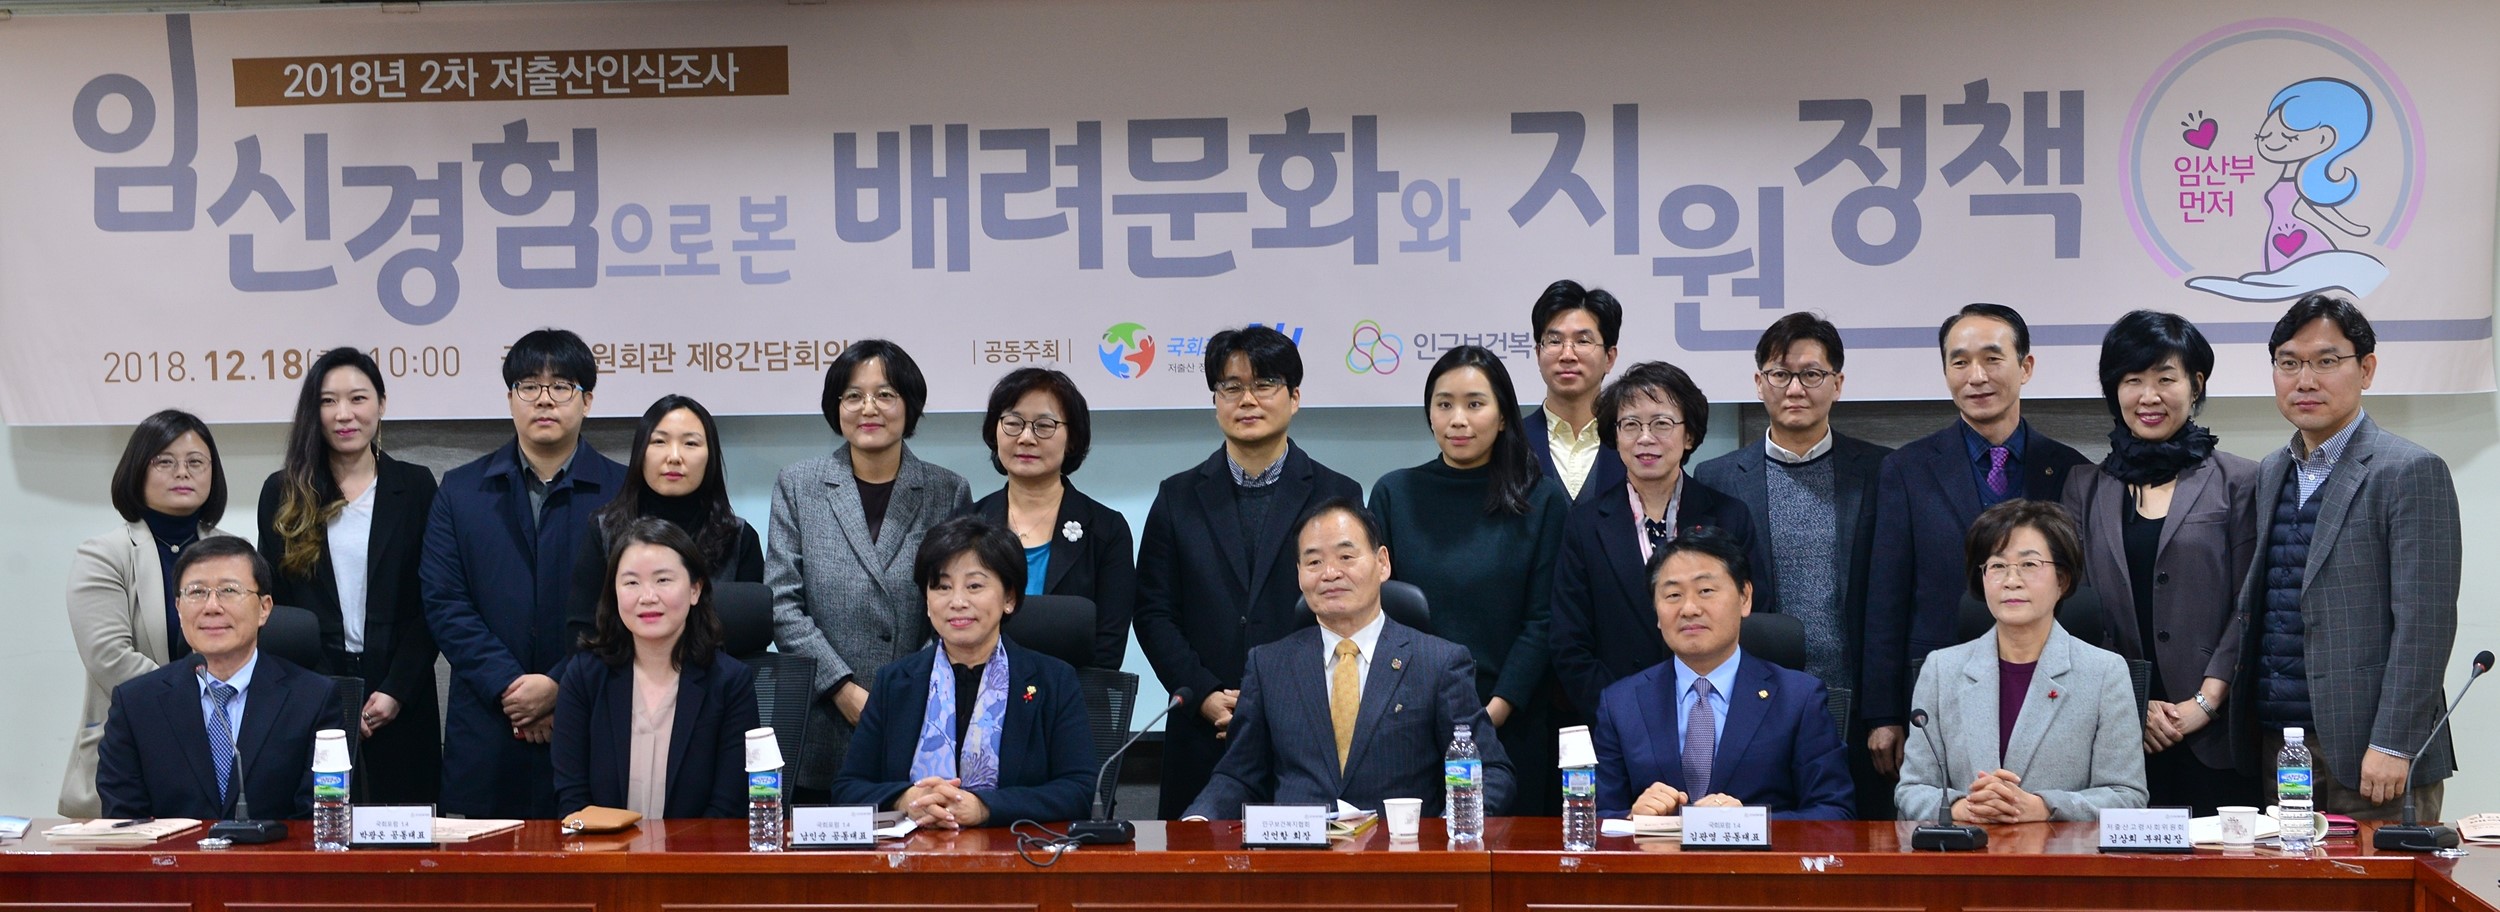 김문정 센터장, 국회 토론회 참석